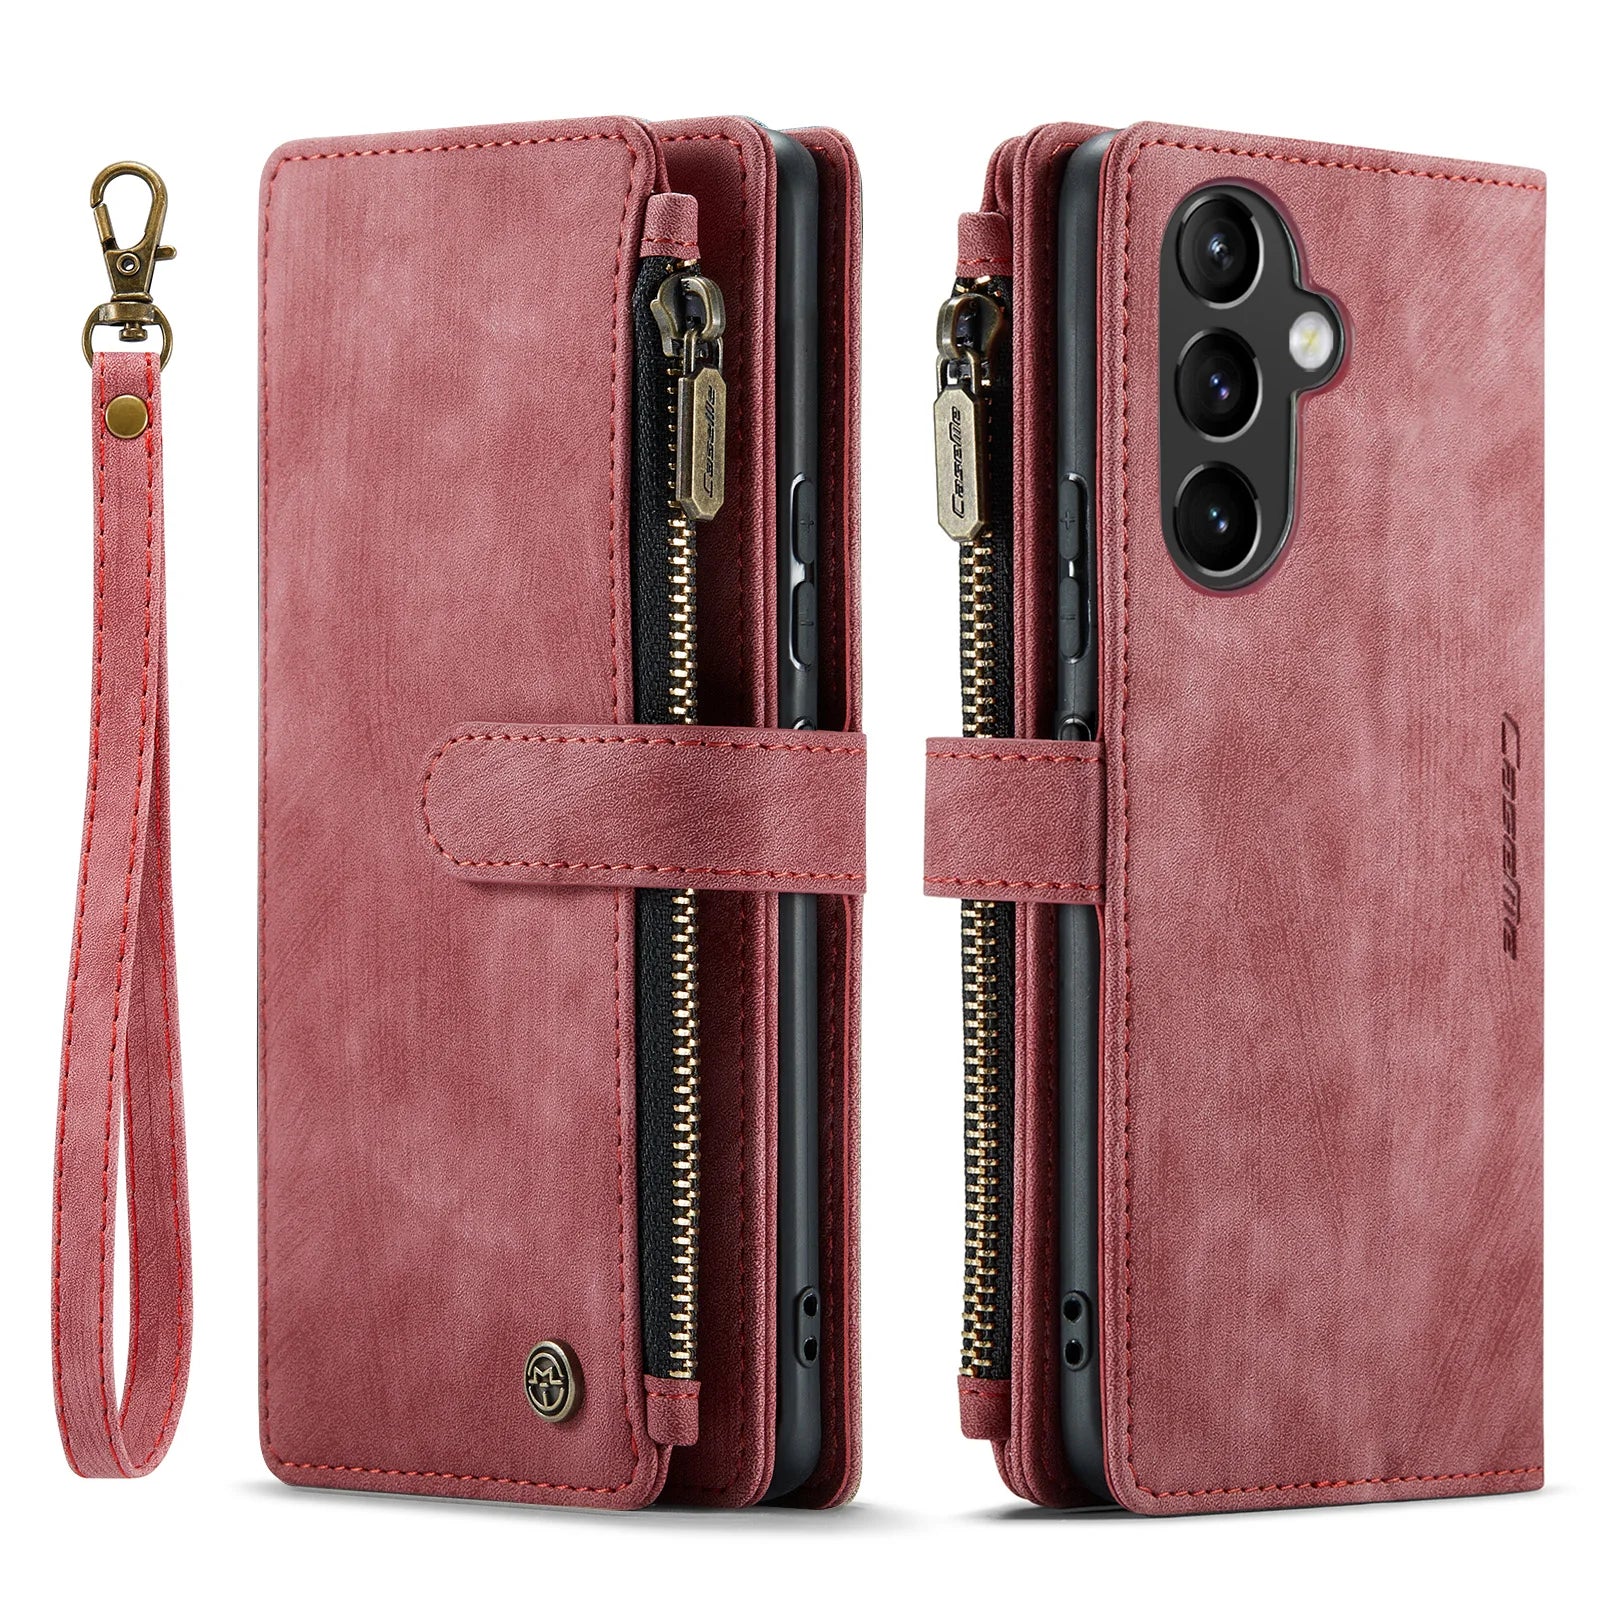 Zipper Leather Wallet Galaxy A Case - DealJustDeal